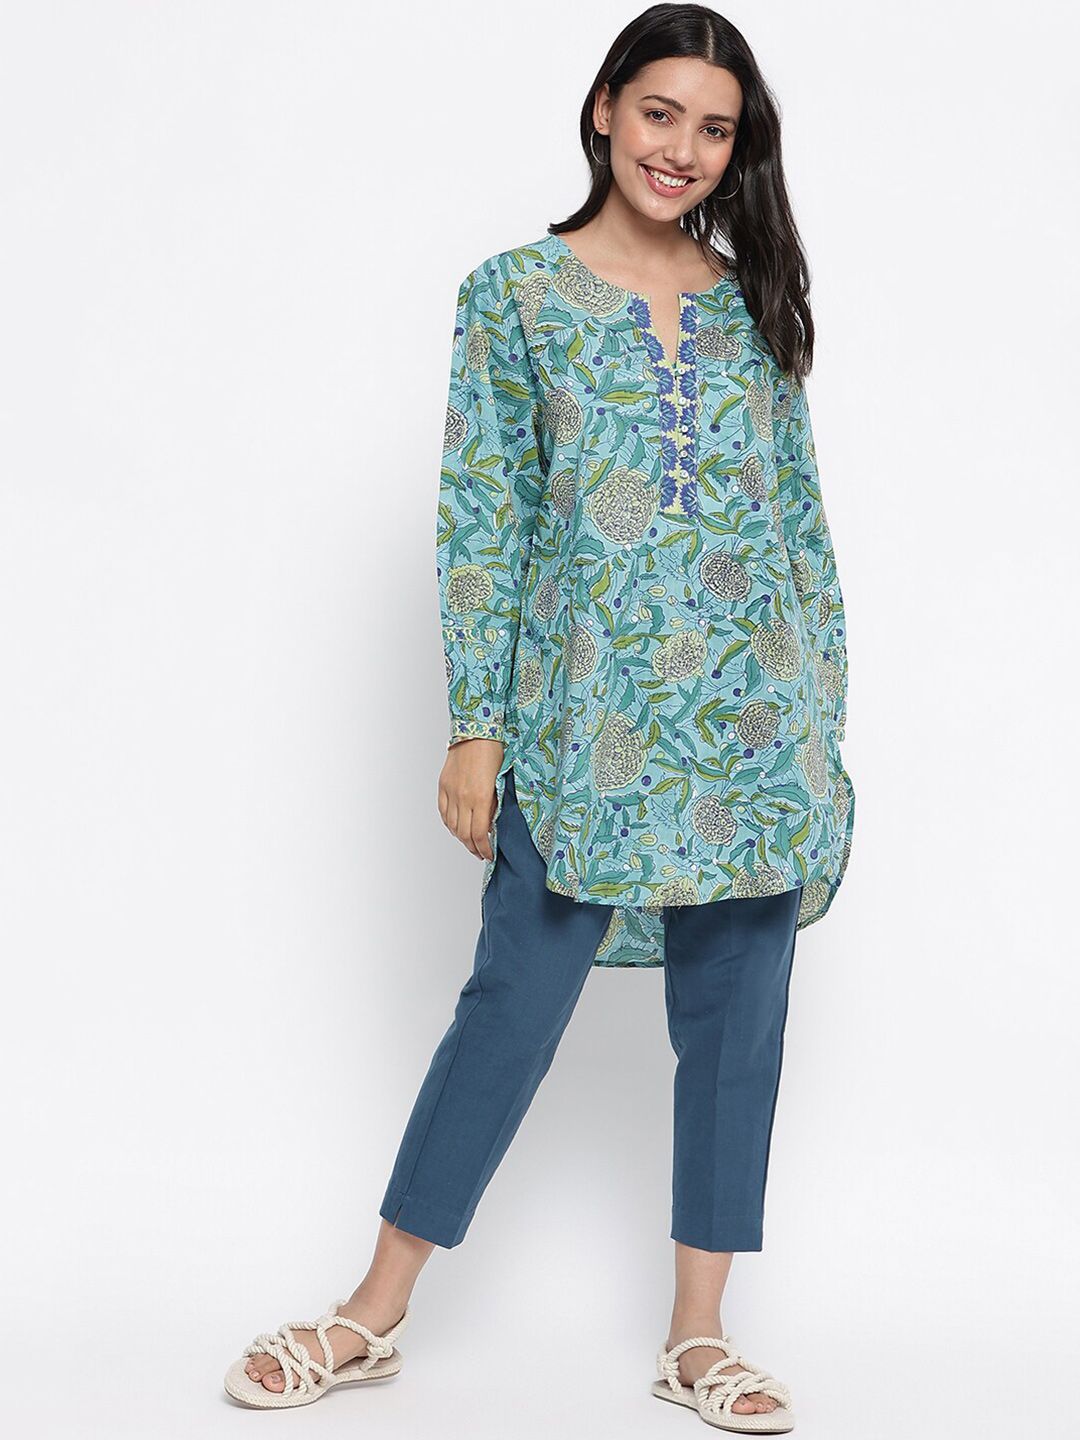 Fabindia Blue & Green Printed Cotton Tunic Price in India